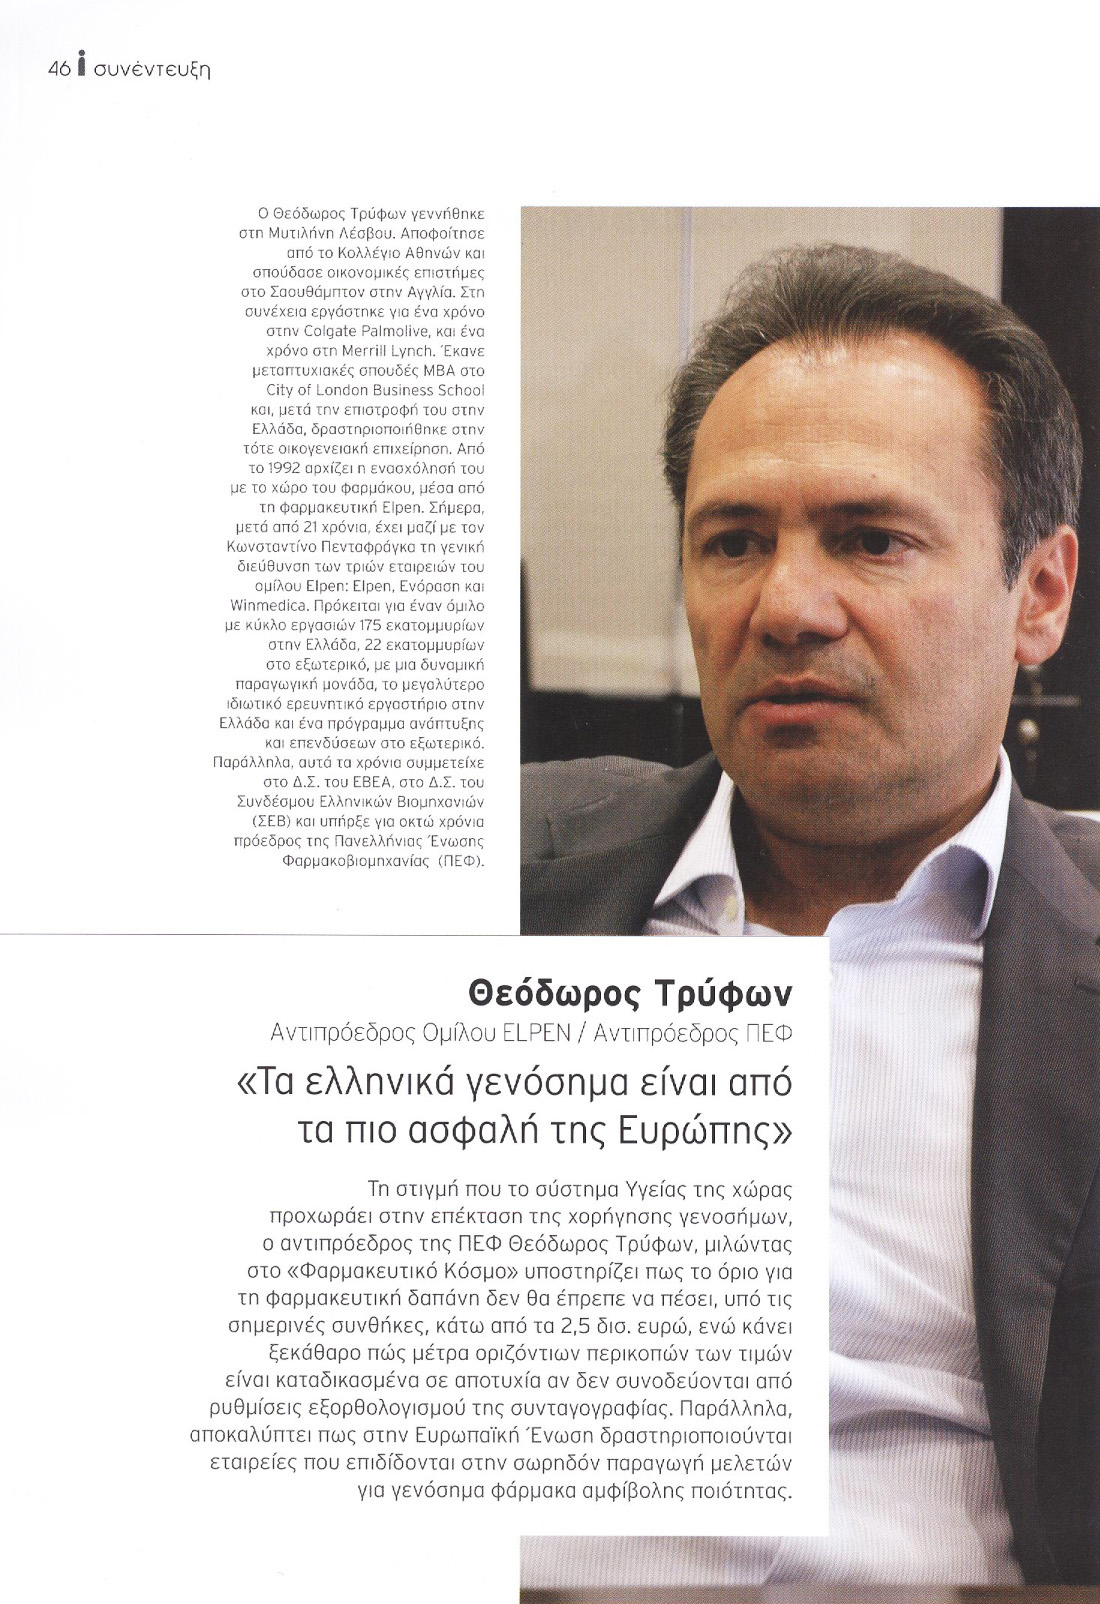 Θεόδωρος Τρύφων Αντιπρόεδρος ΔΣ ELPEN / Αντιπρόεδρος ΠΕΦ Συνέντευξη από το περιοδικό 